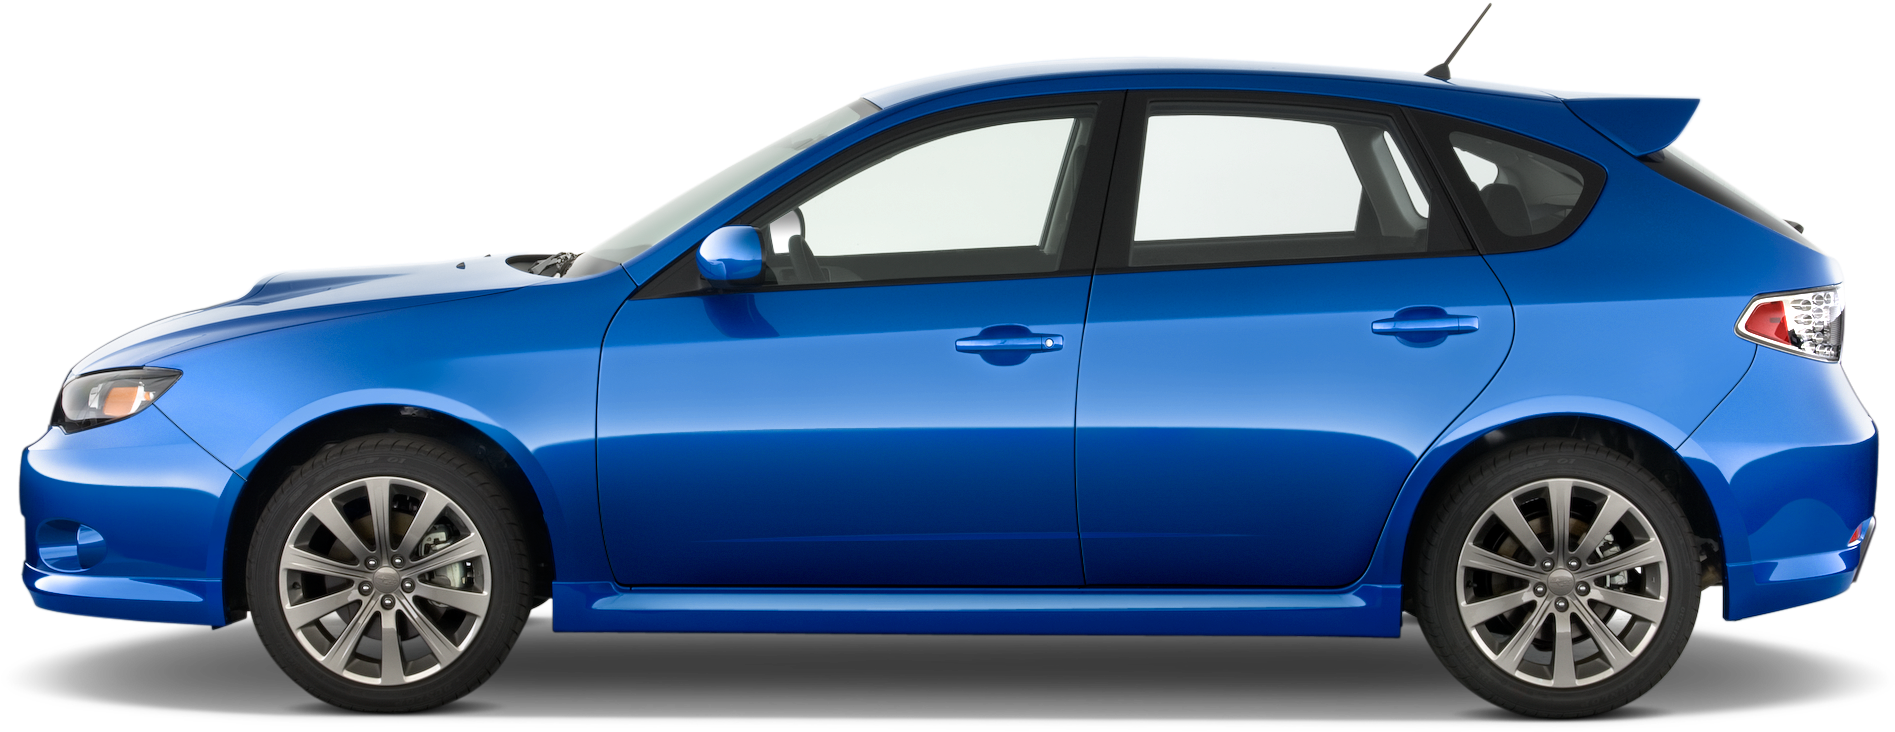 Subaru Impreza PNG Transparent